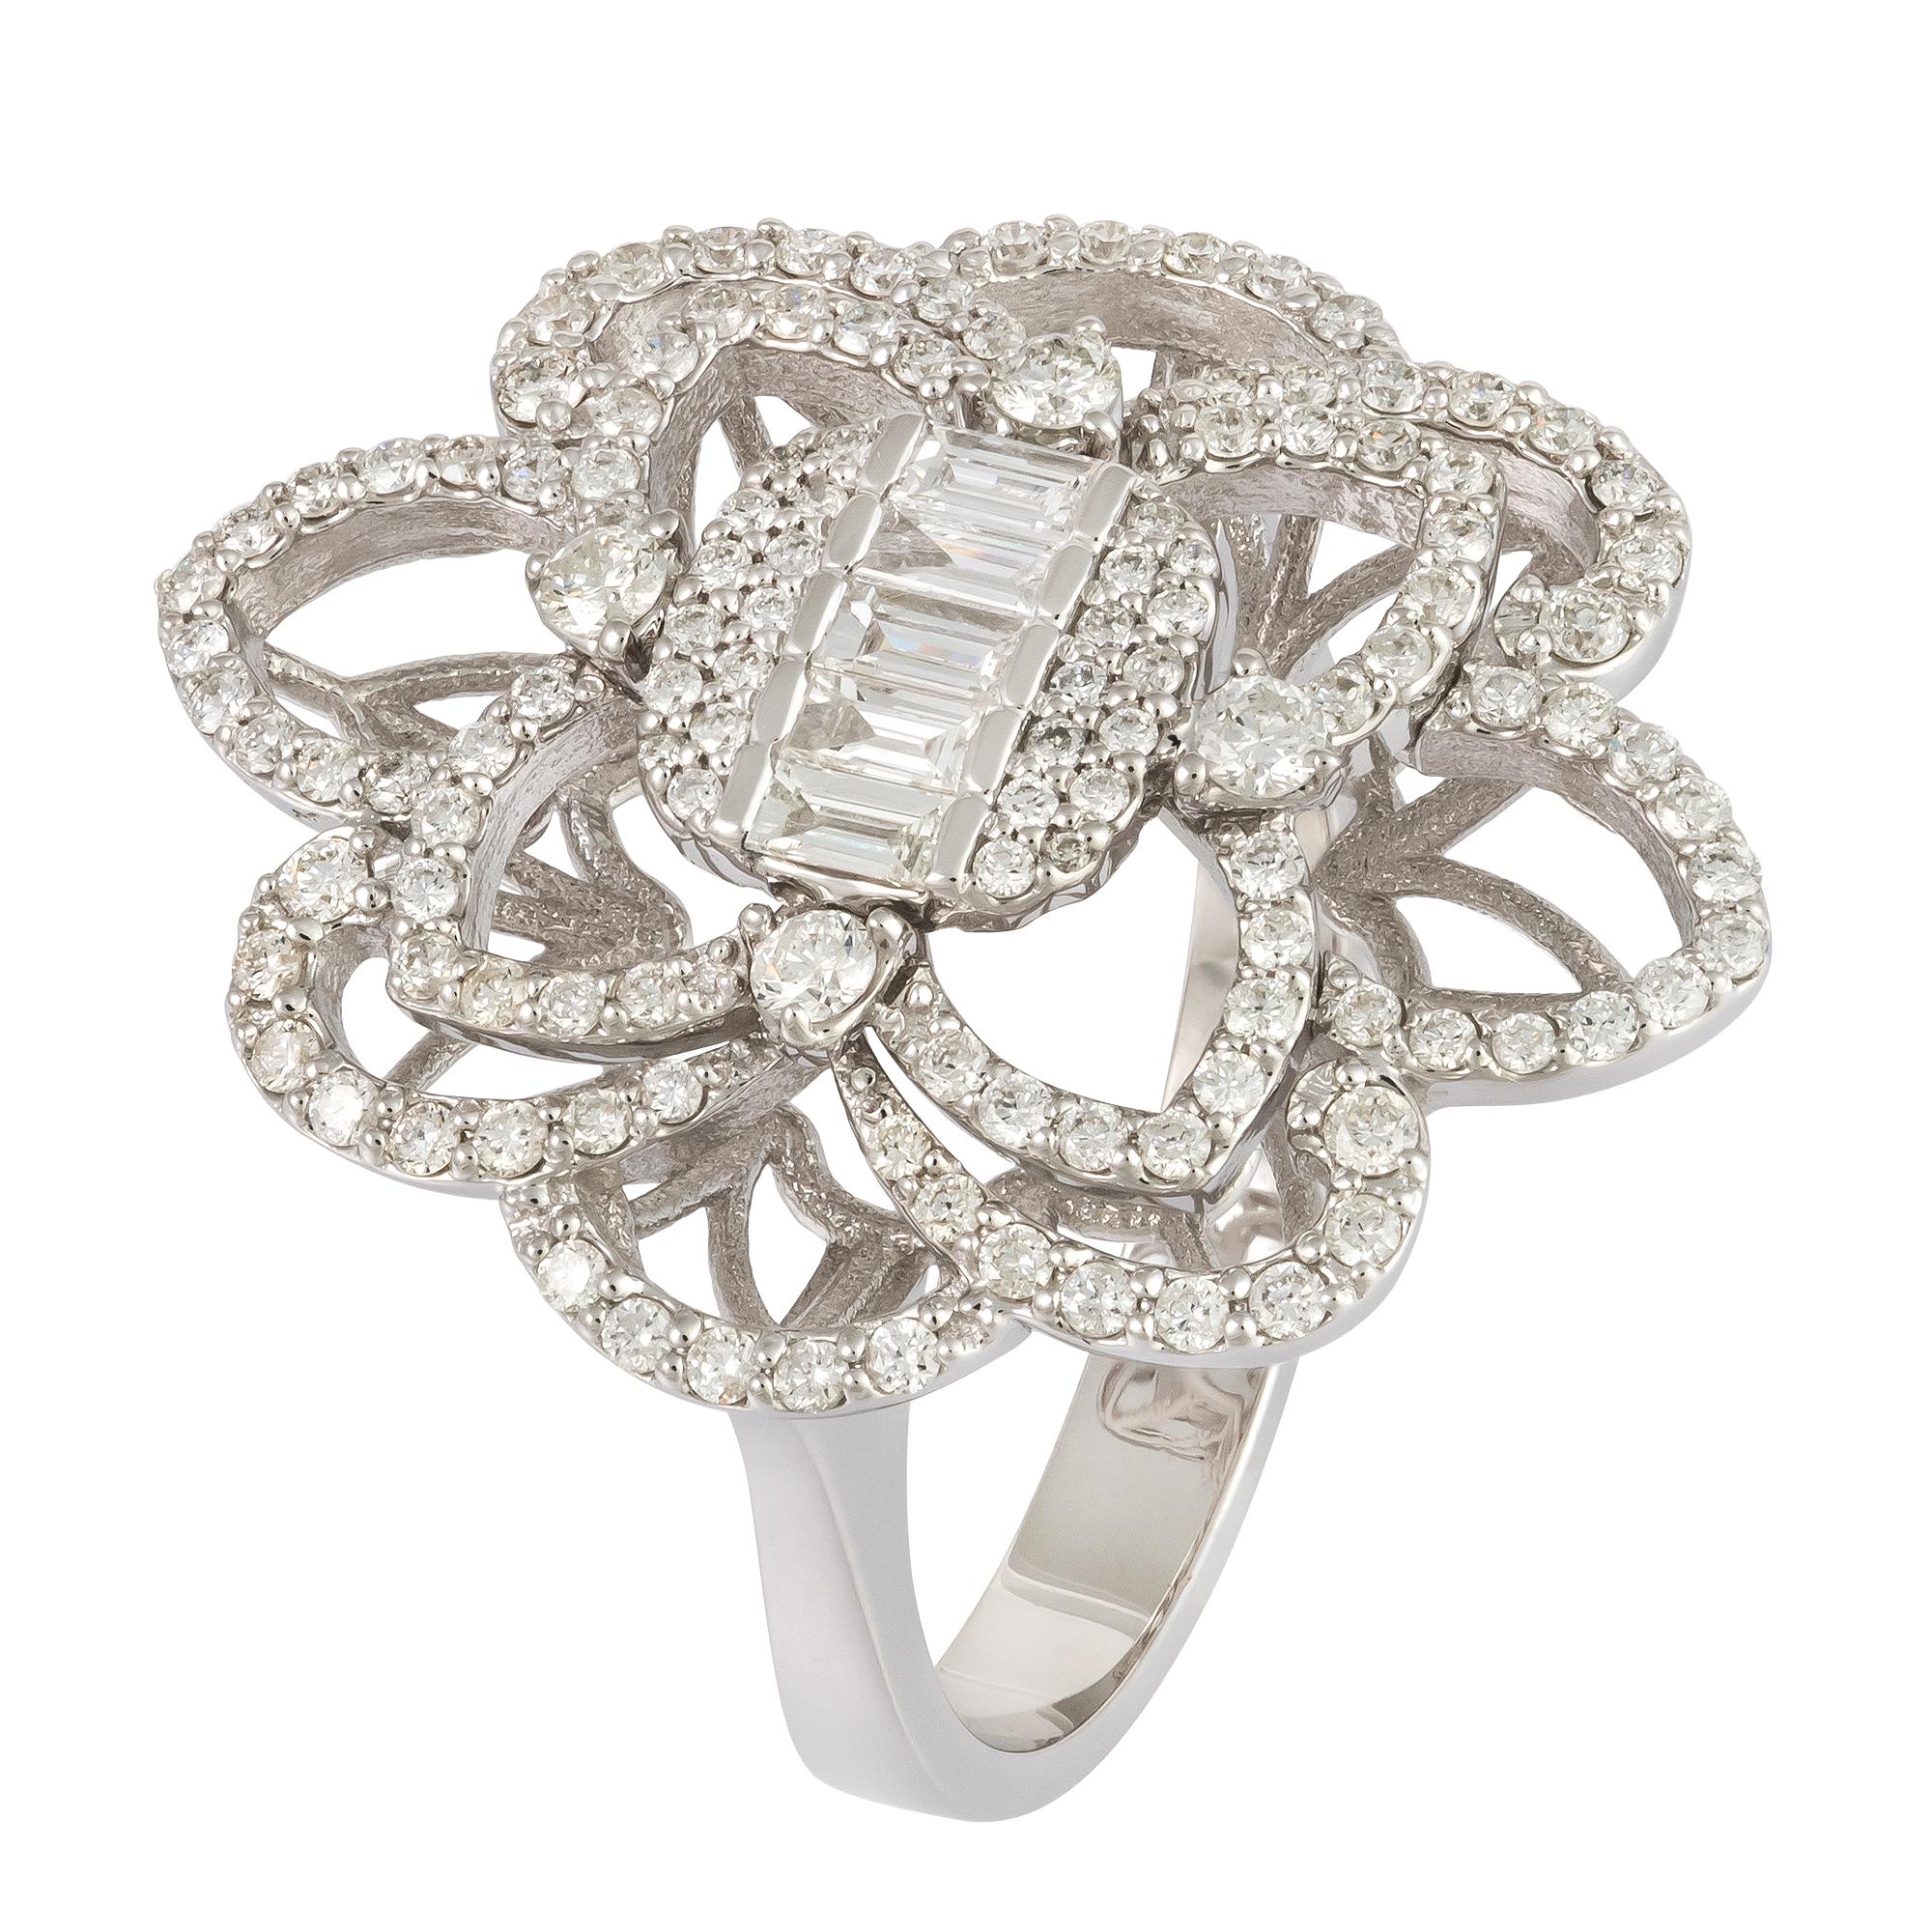 For Sale:  Stunning Flower White 18K Gold White Diamond Ring For Her 3